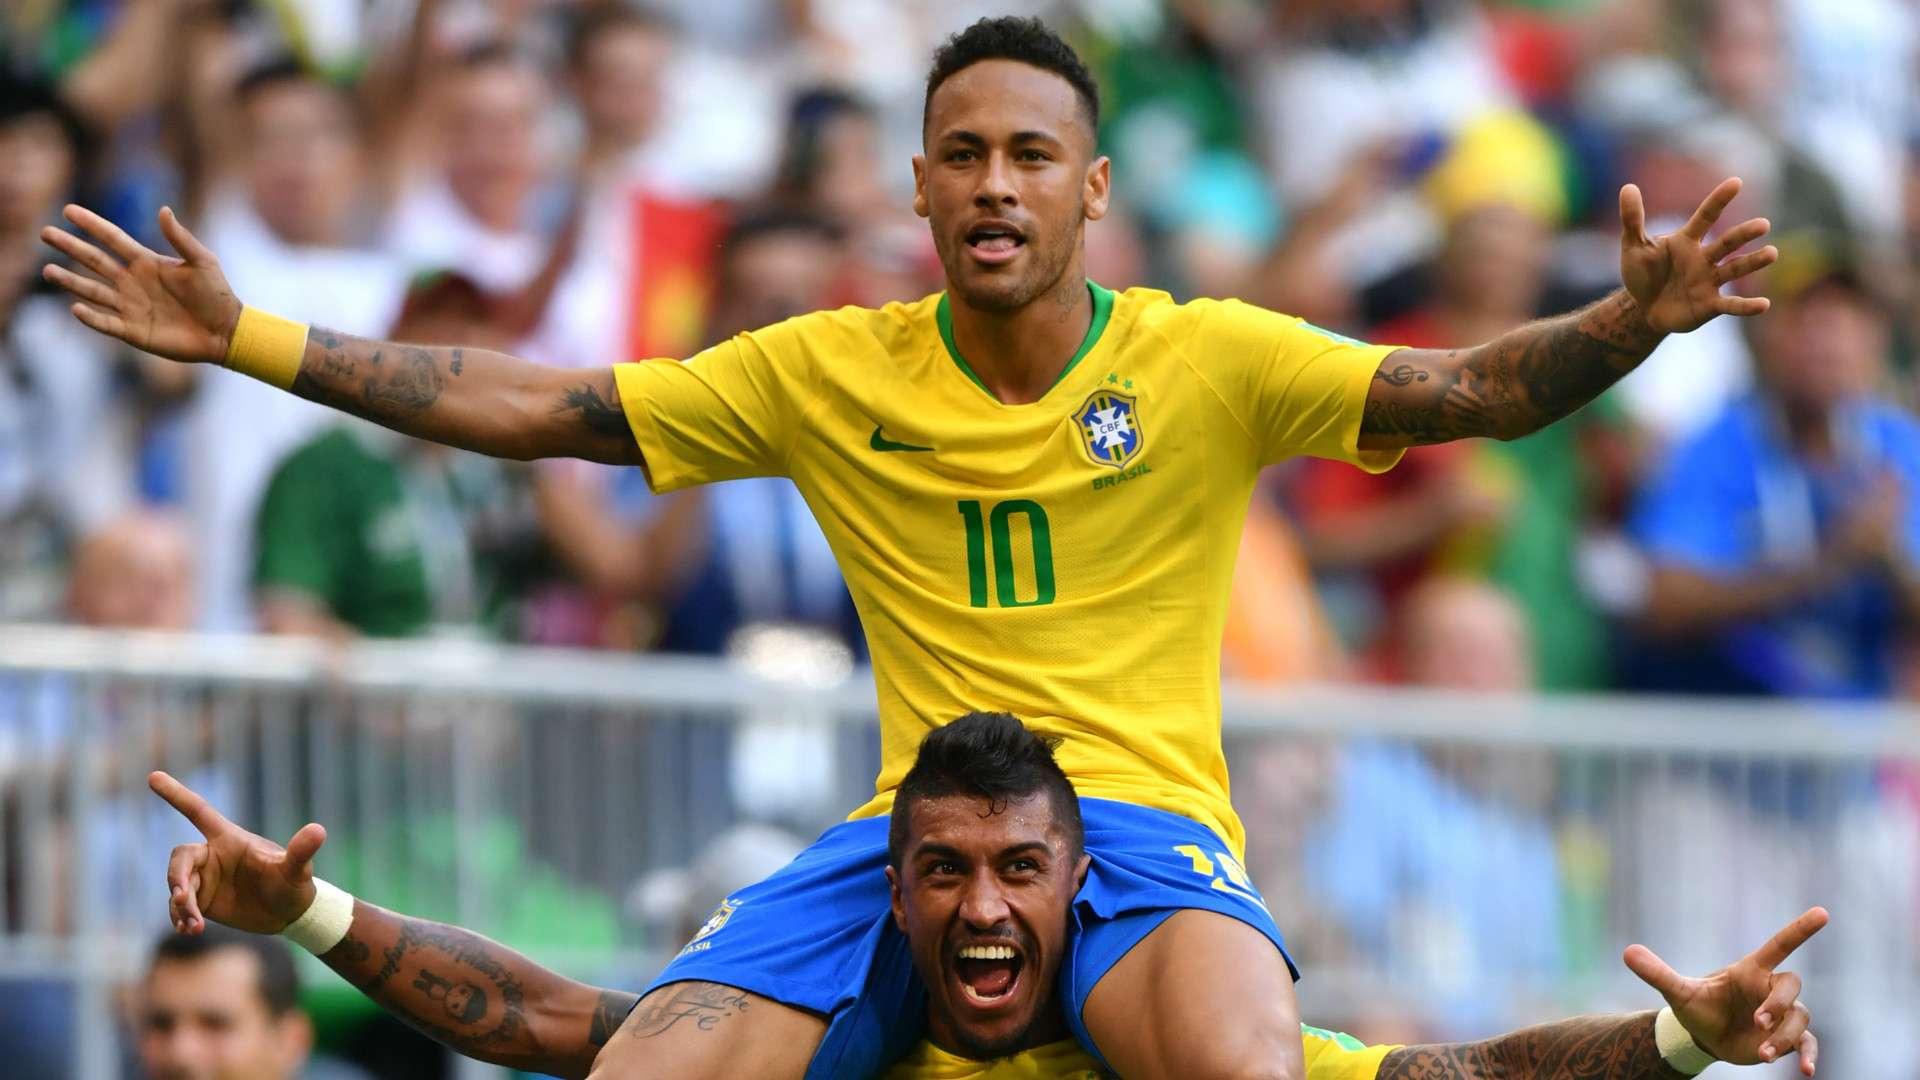 Neymar Brazil 2018